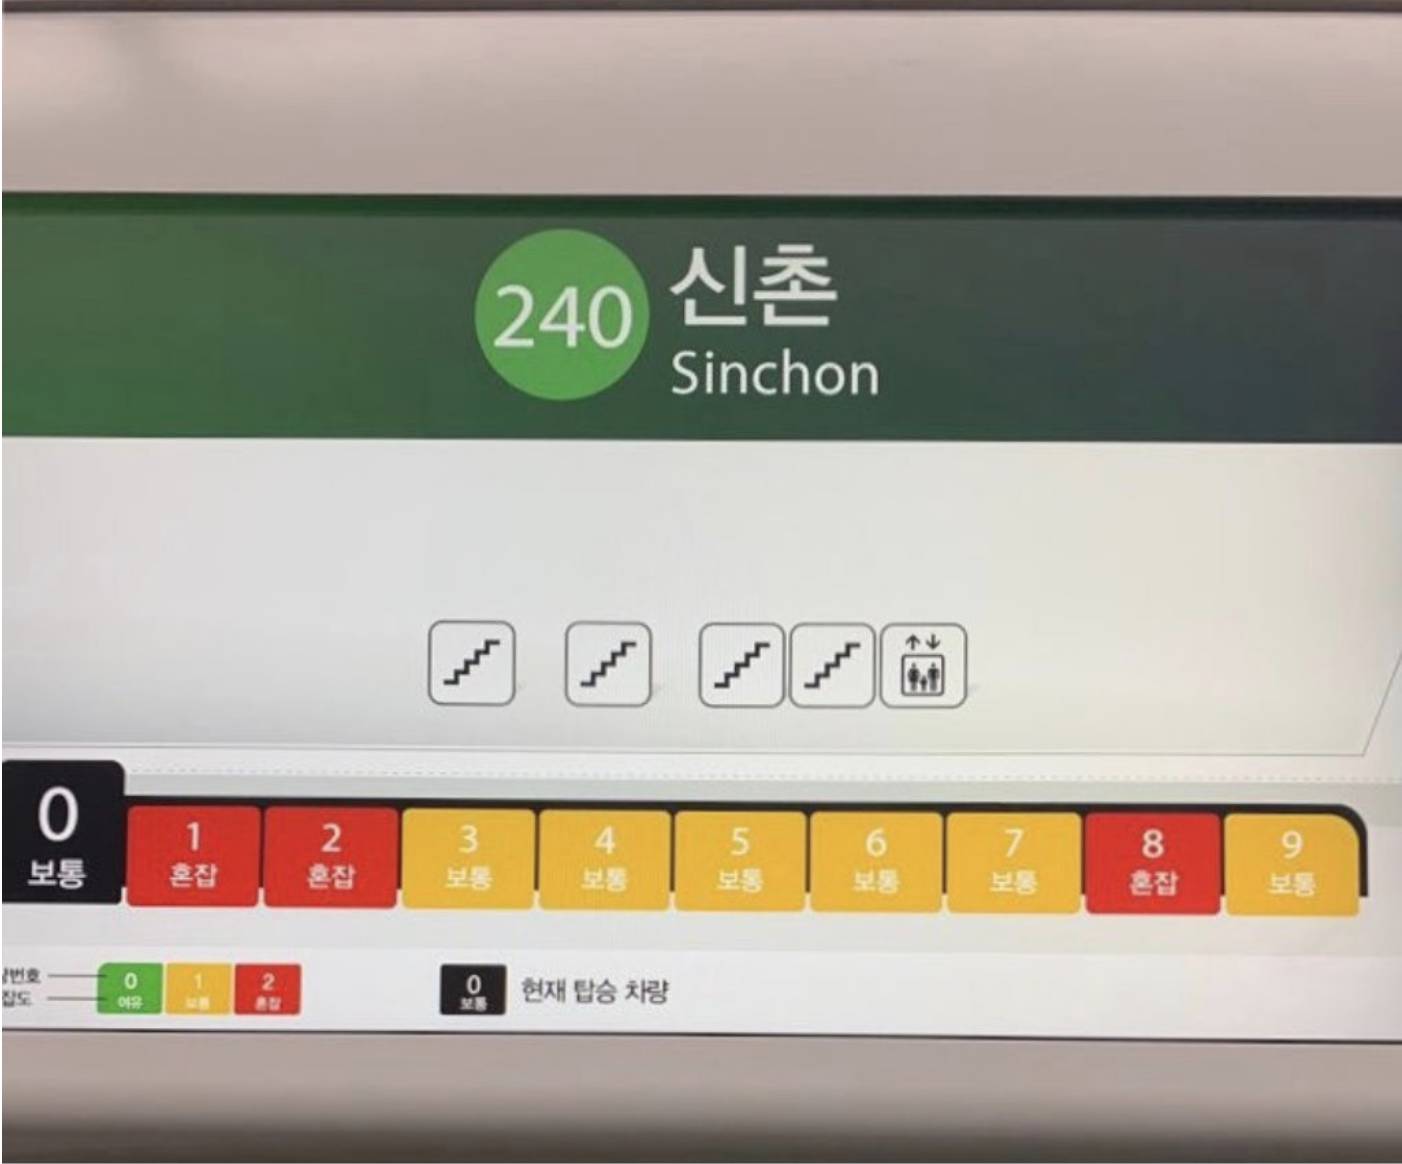 首爾地鐵 車廂擠迫度分為3等，以綠、黃、紅色區分。